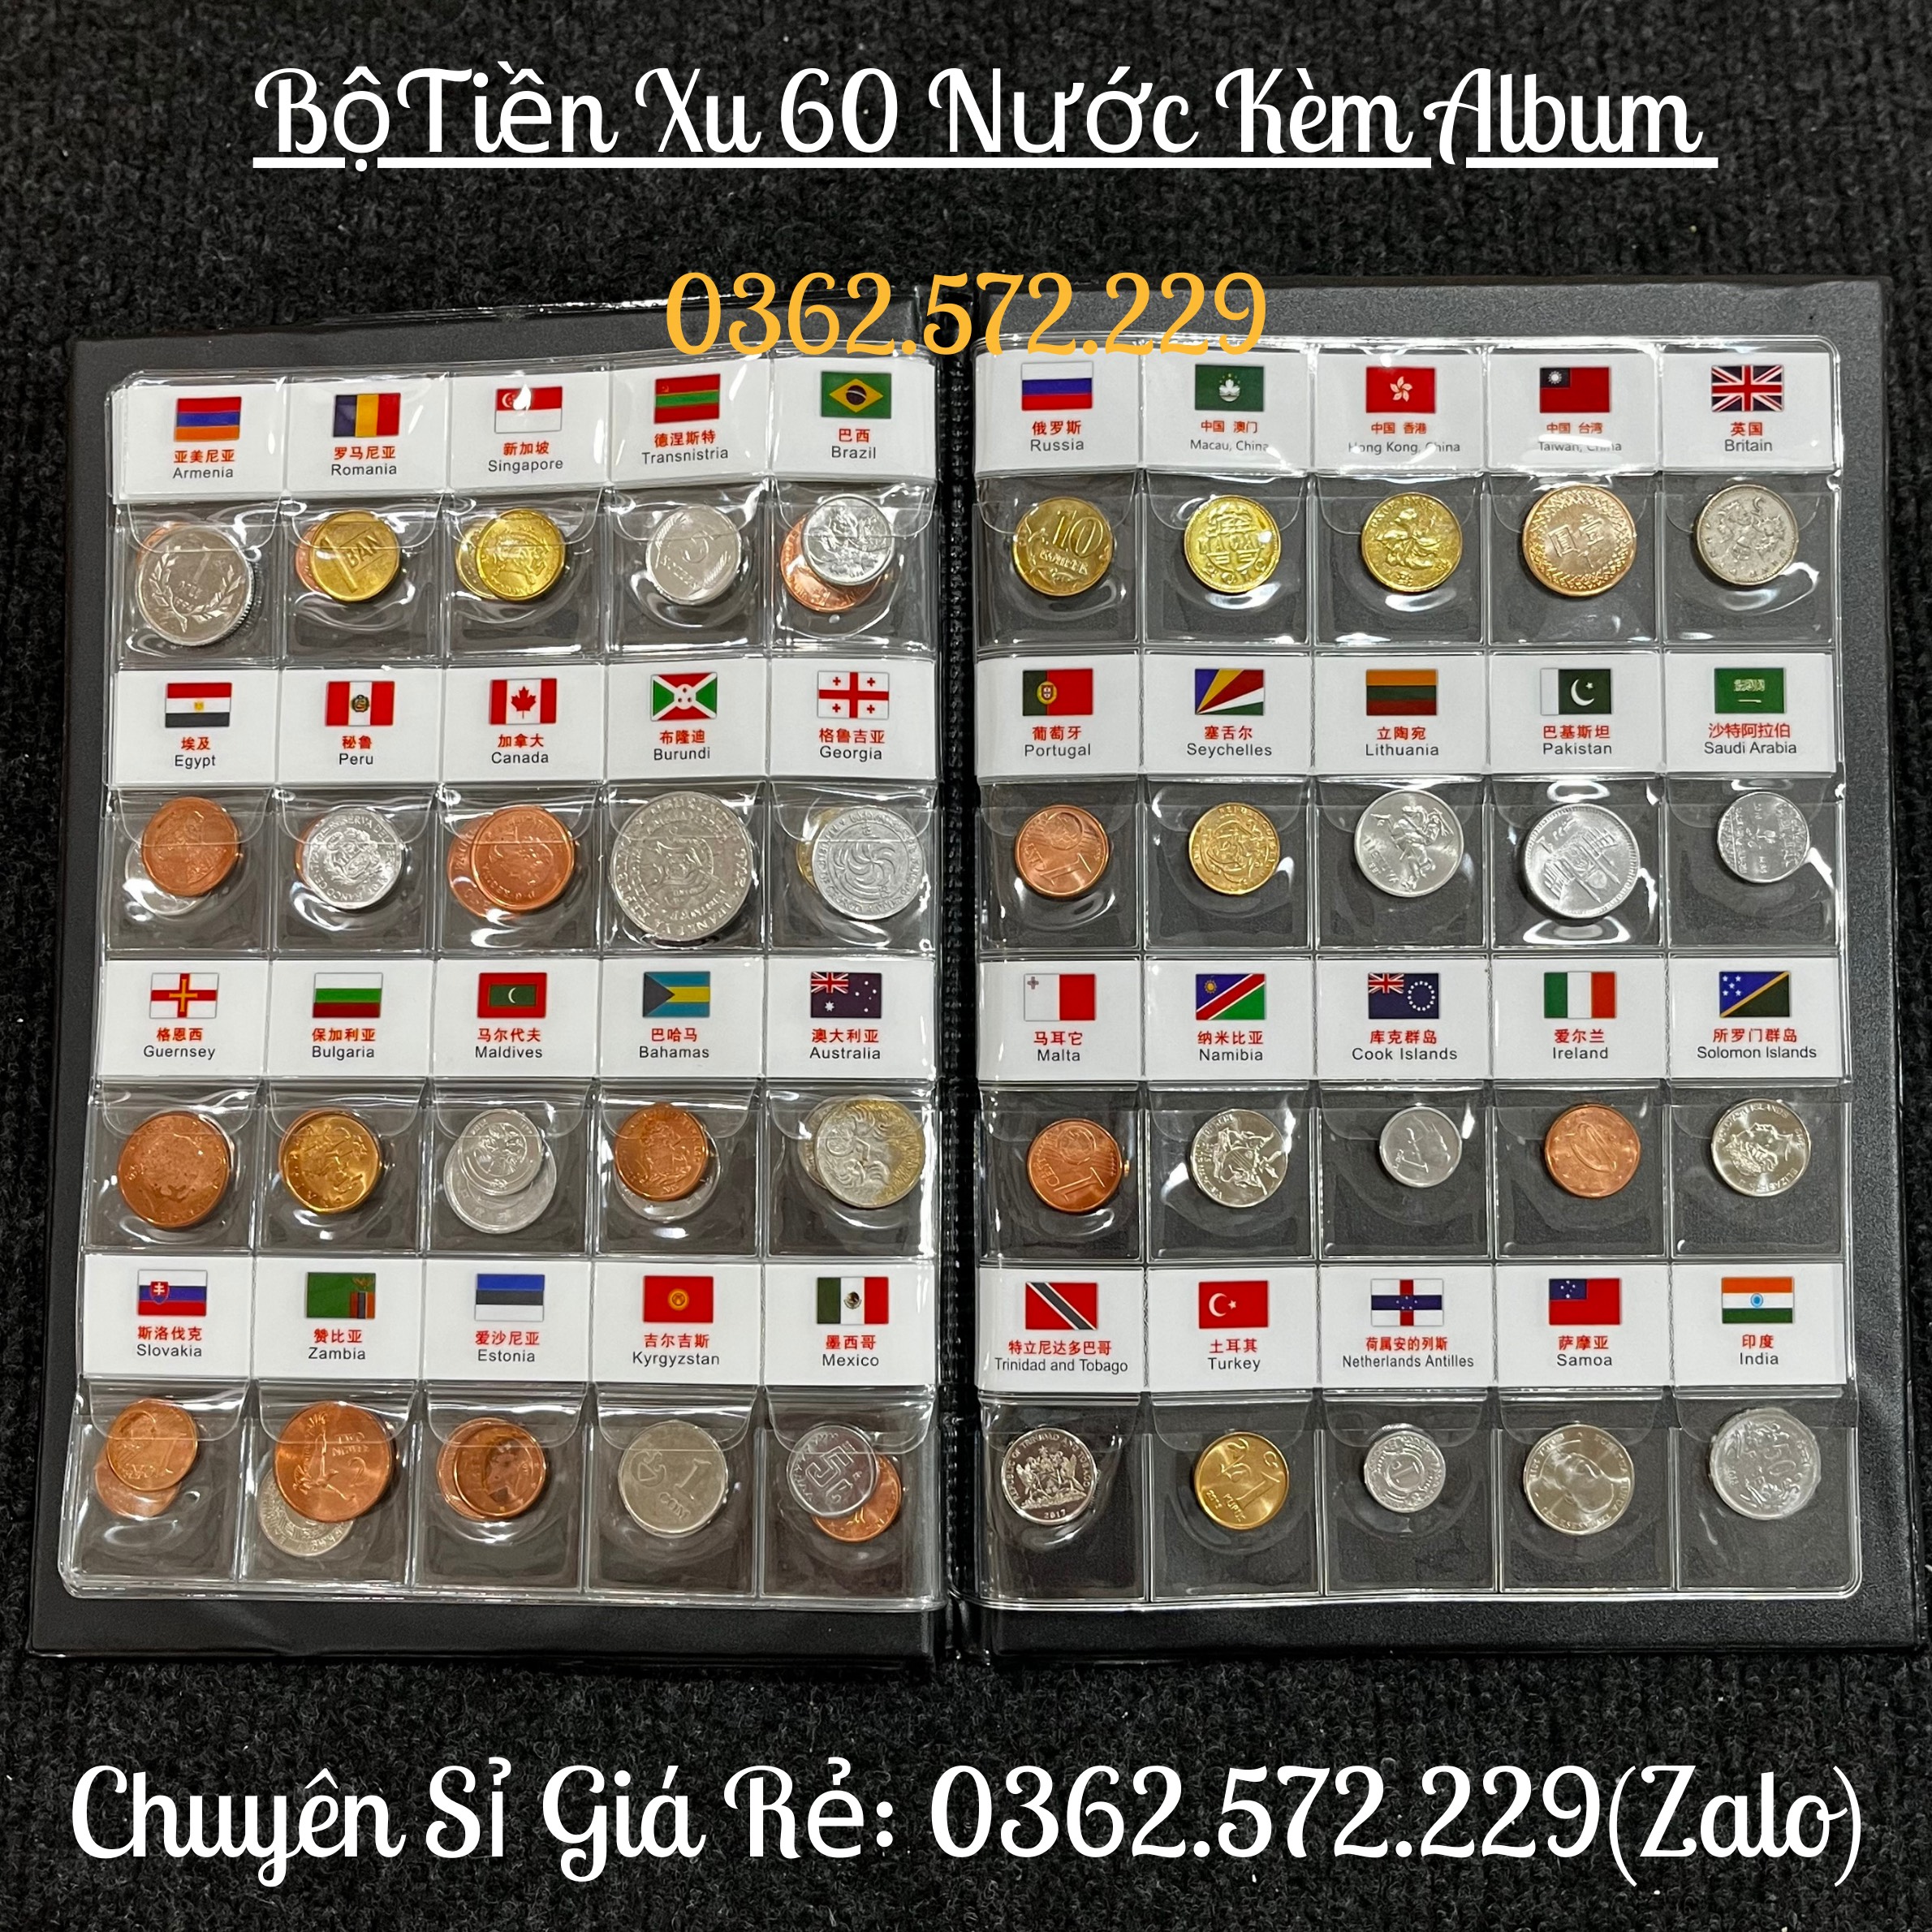 Bộ Album xu 60 nước quốc tế có cờ ABXQT60